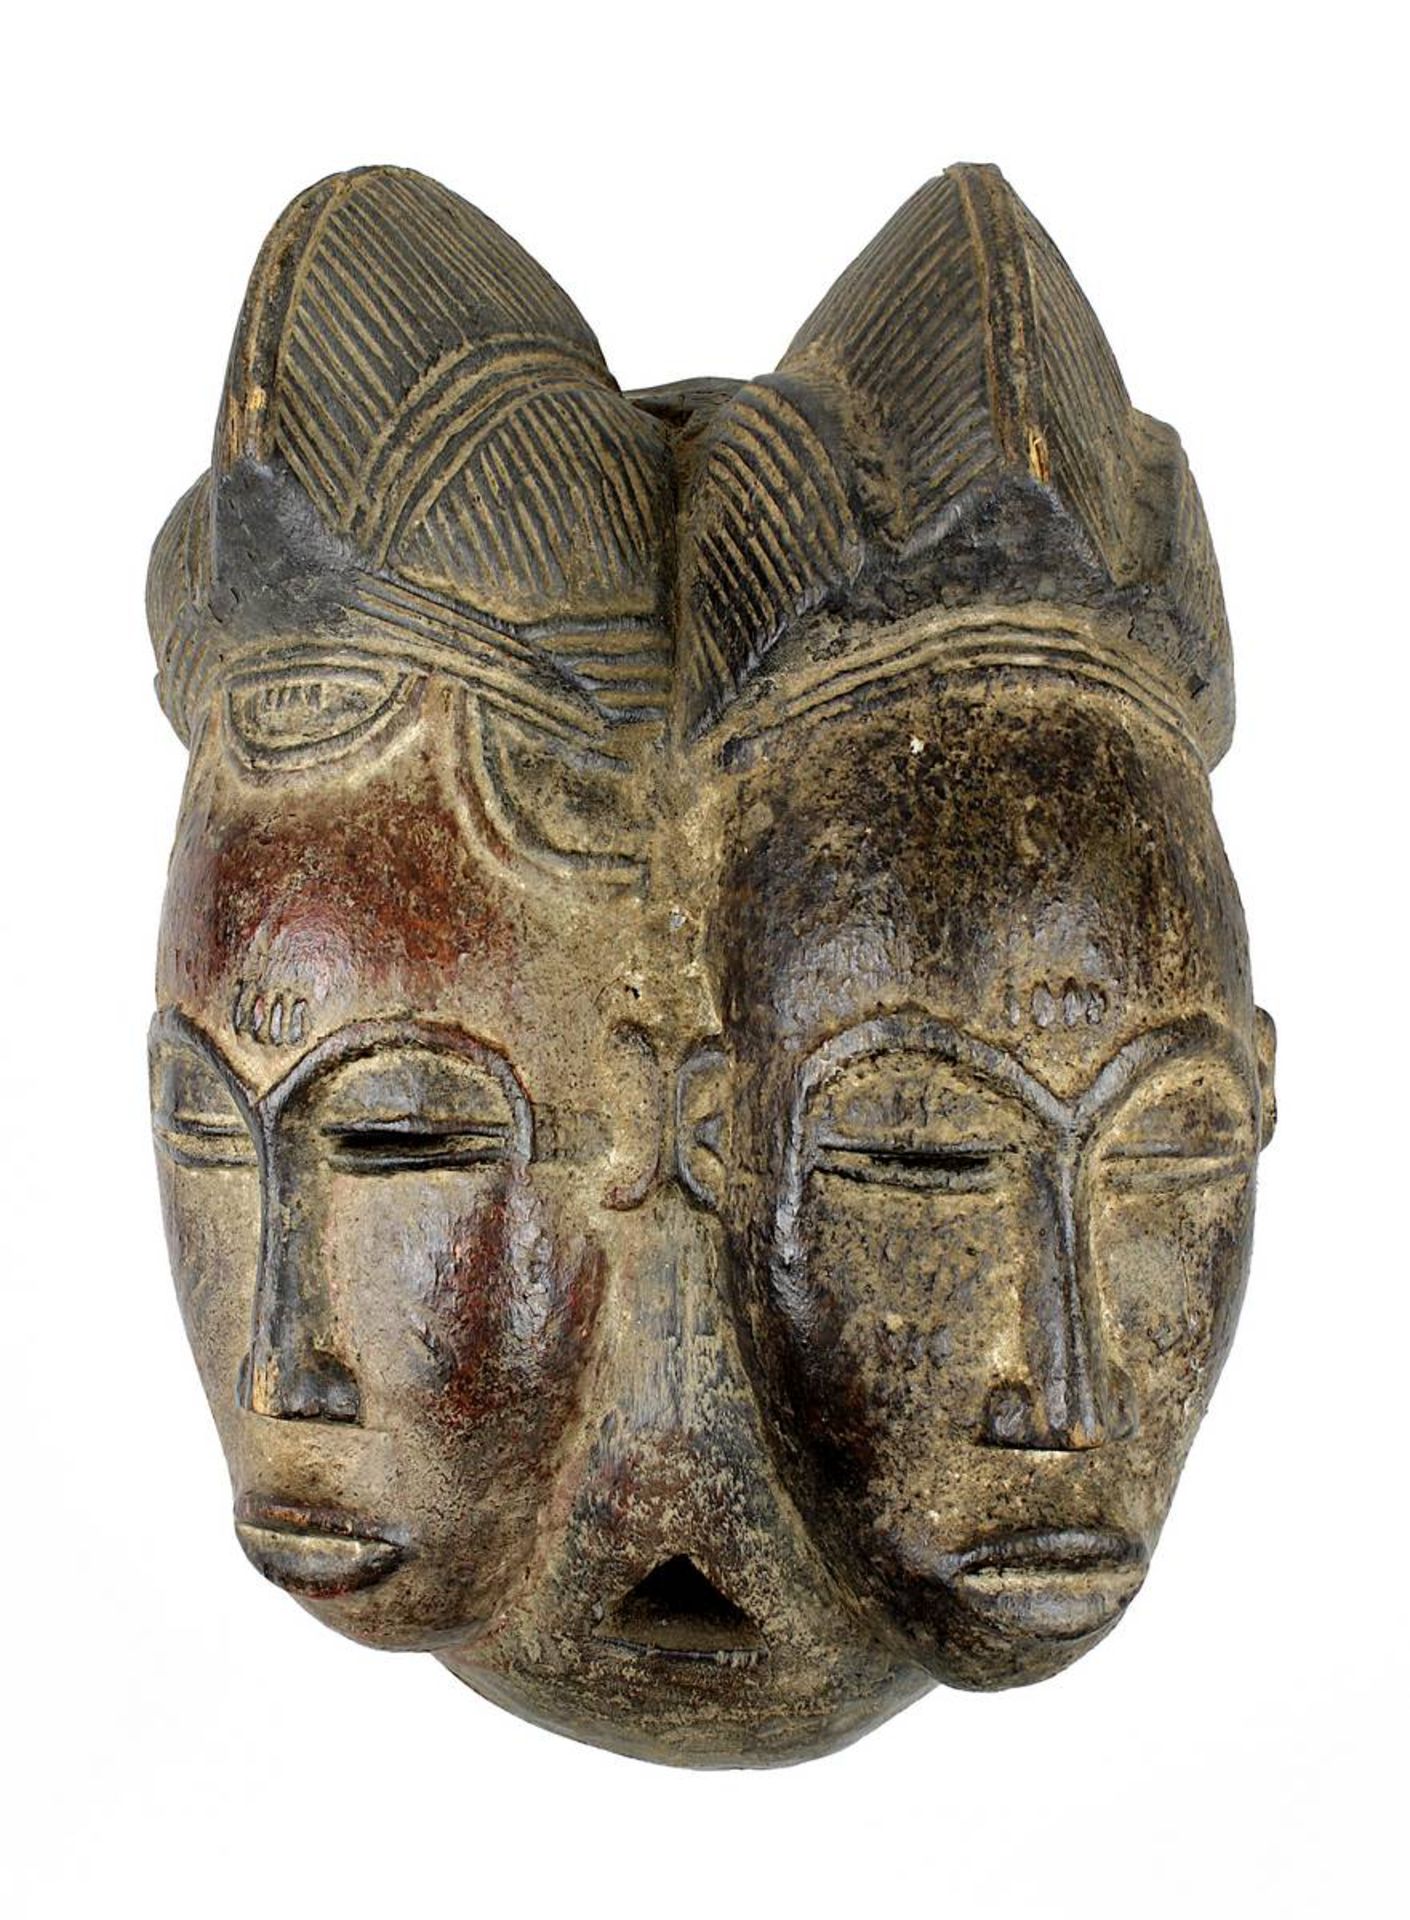 Mblo Zwillingsmaske der Baule, Côte d'Ivoire, Holz geschnitzt, partiell mit Kaolin (in Resten) gefär